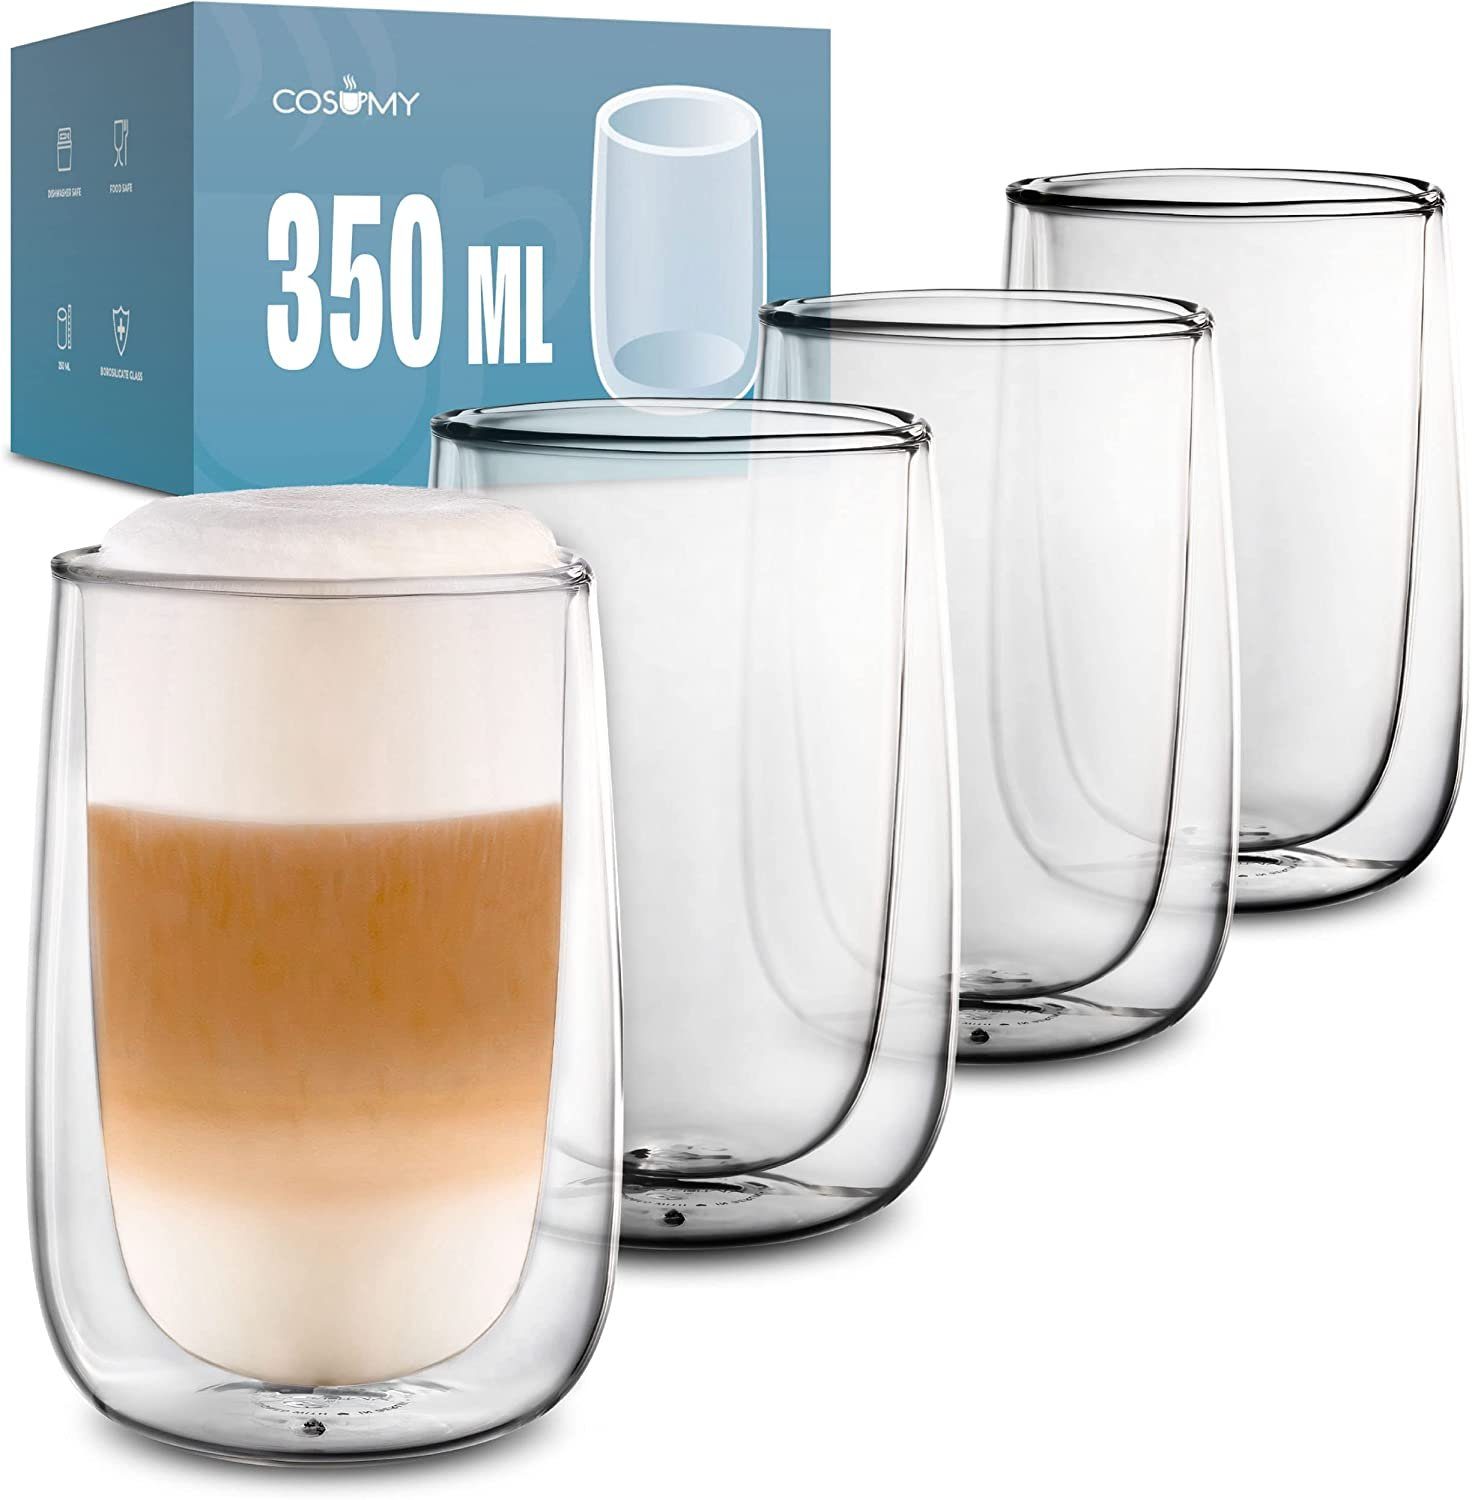 Cosumy Gläser-Set 4 Latte Macchiato Gläser doppelwandig 350ml, Glas, Für Latte Macchiato - Spülmaschinenfest - Hält lange warm